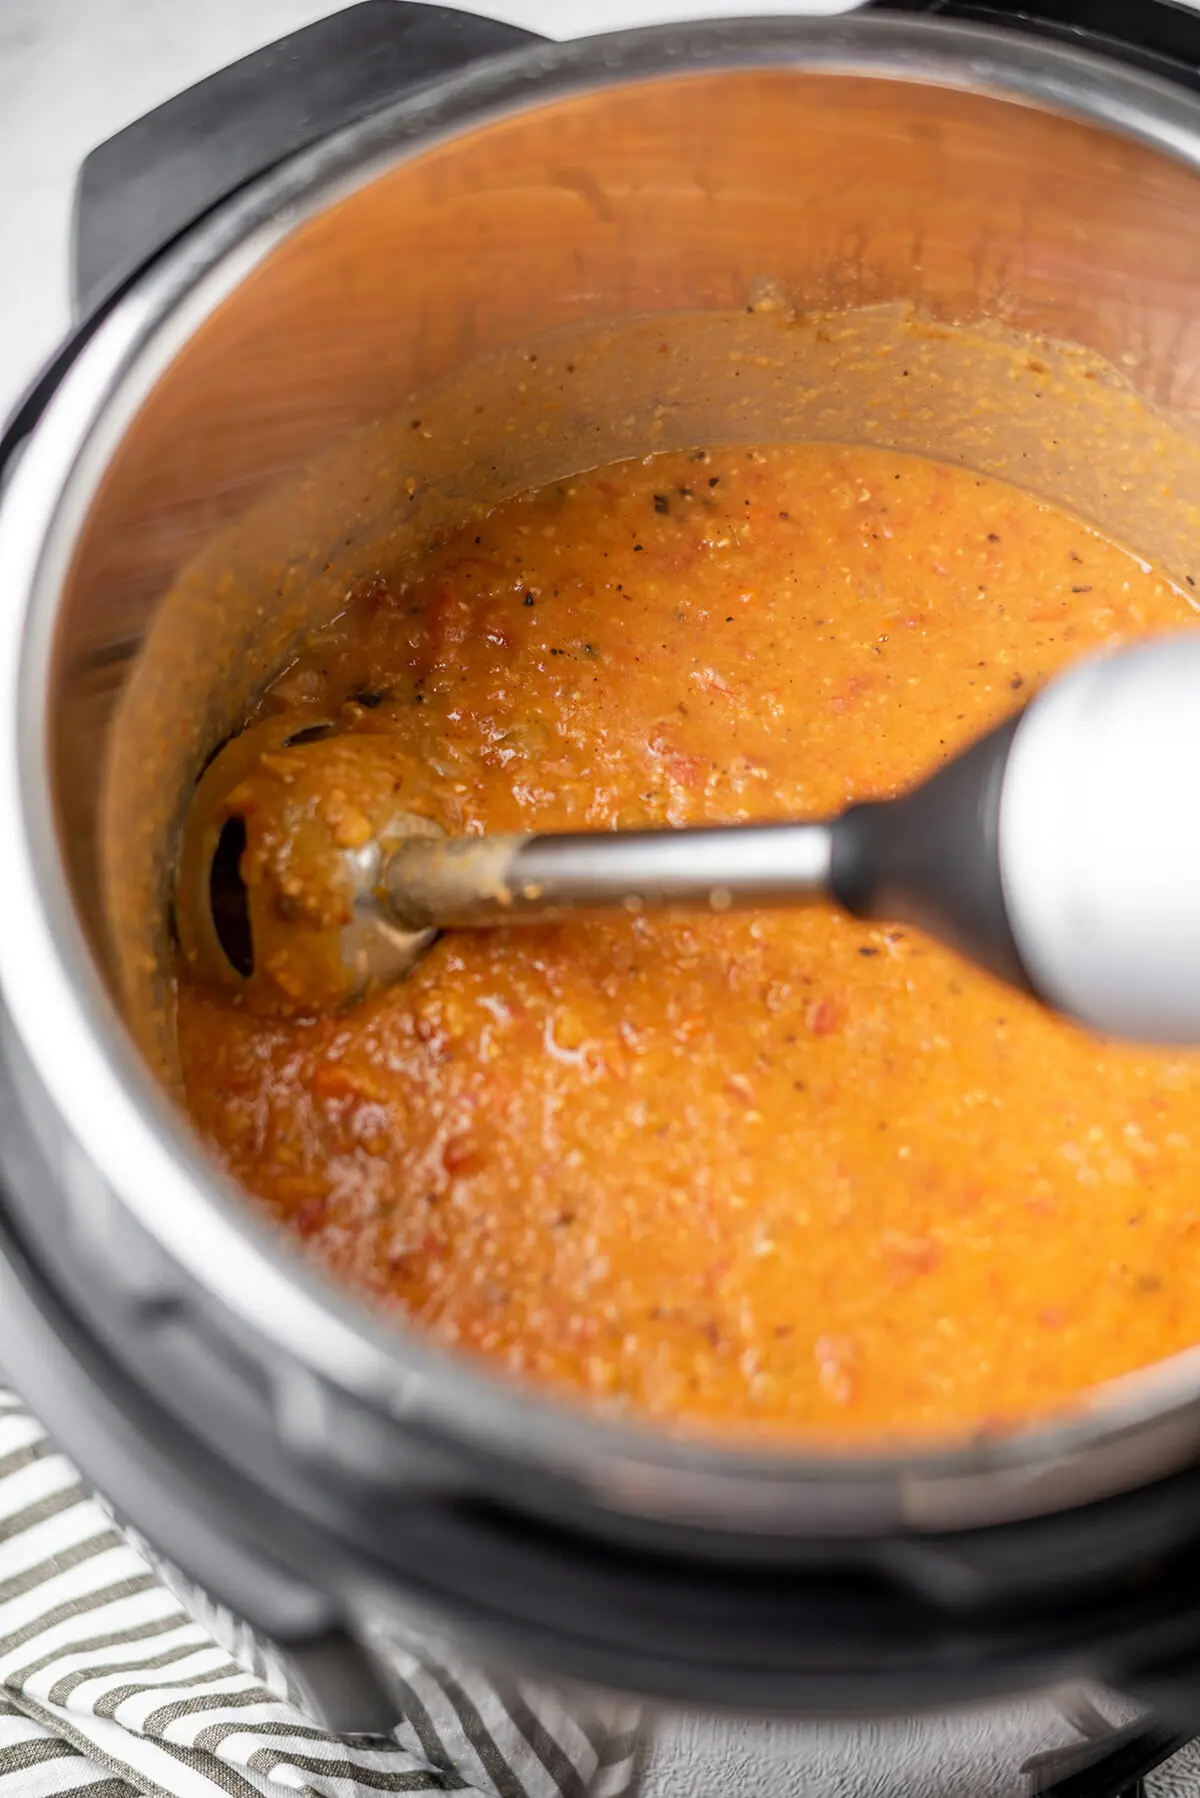 Blending red lentil soup with an immersion blender